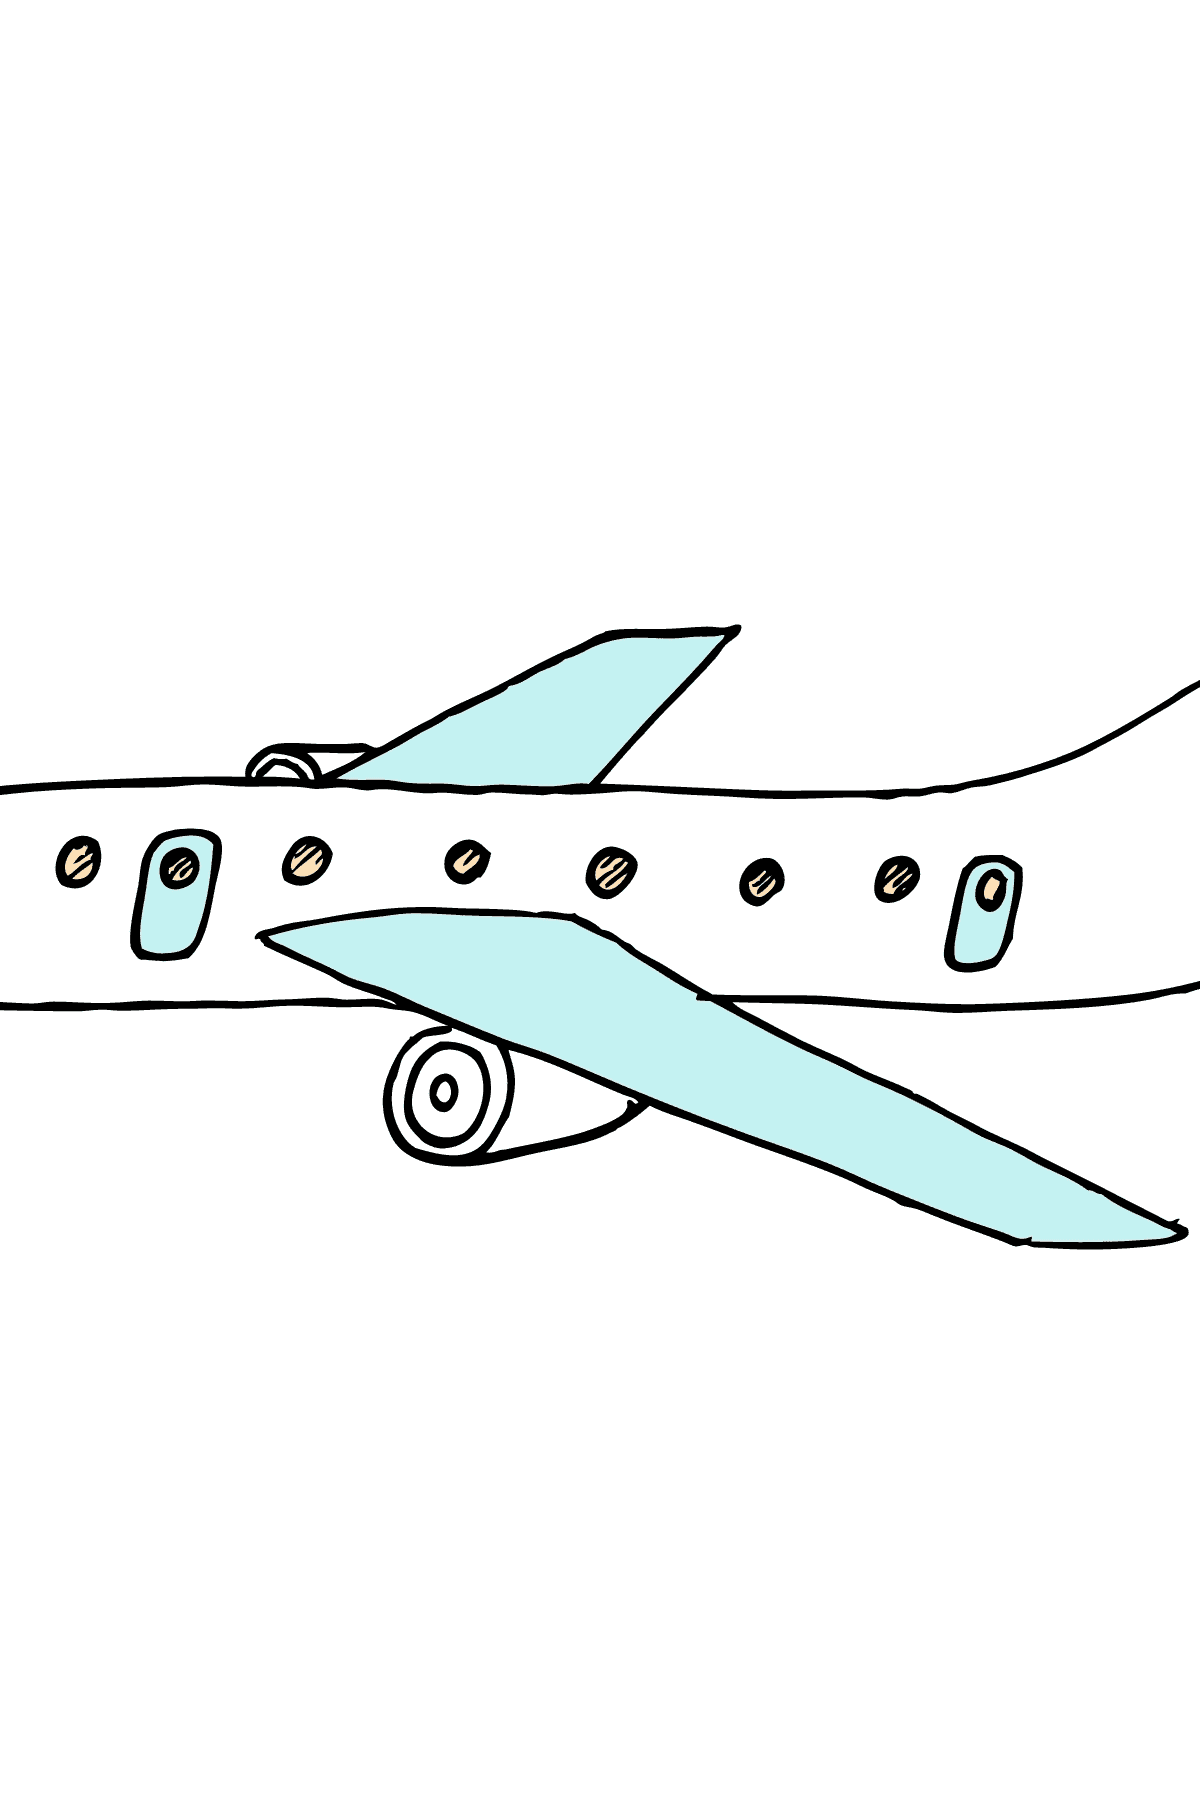 Kleurplaat vliegtuig (commerciële jet) - kleurplaten voor kinderen